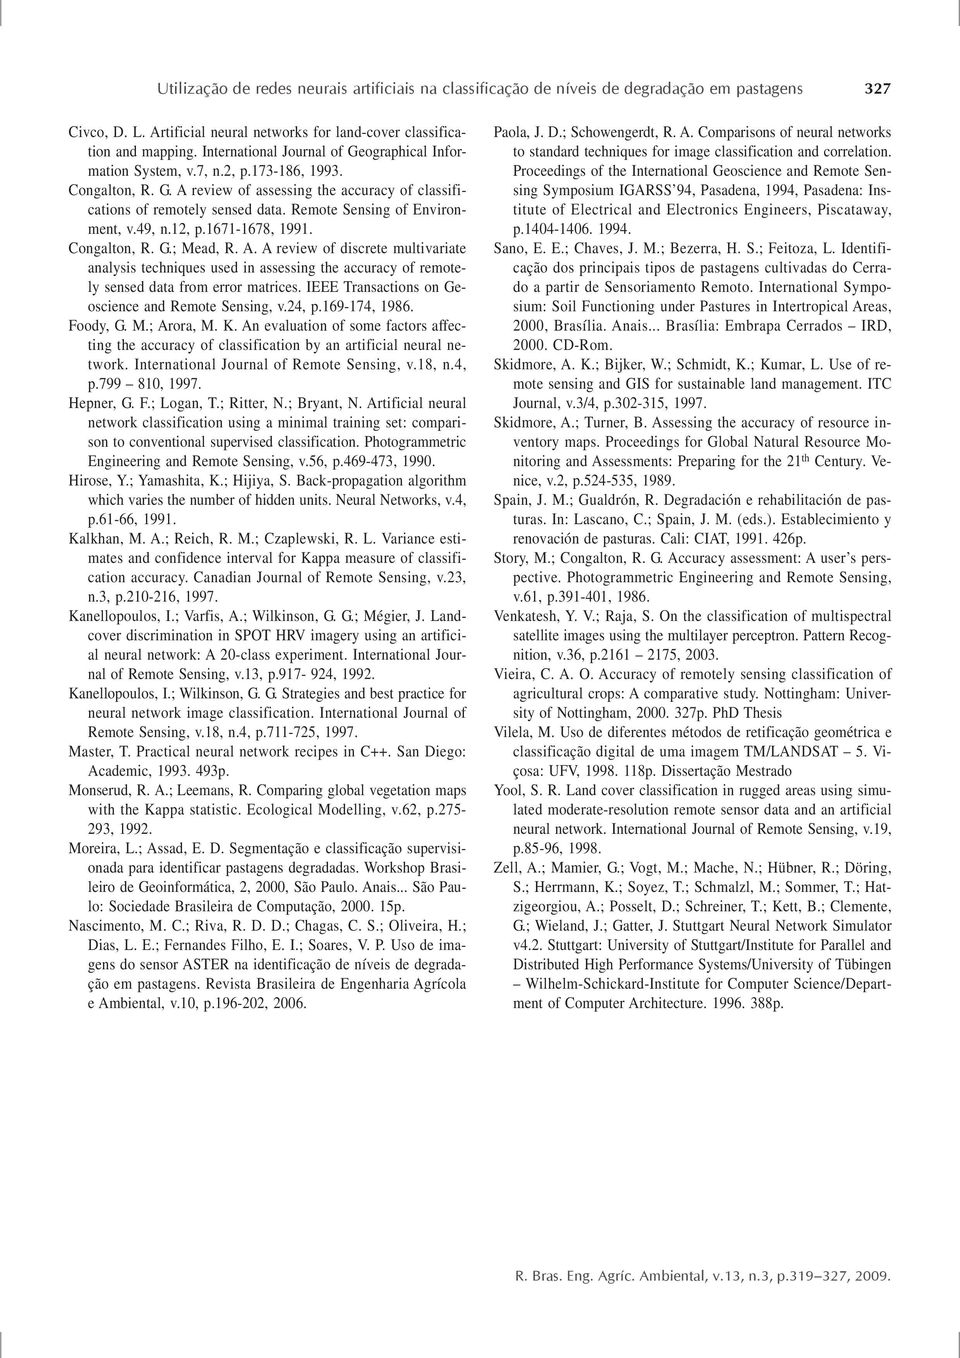 Remote Sensing of Environment, v.49, n.2, p.67-678, 99. Congalton, R. G.; Mead, R. A.